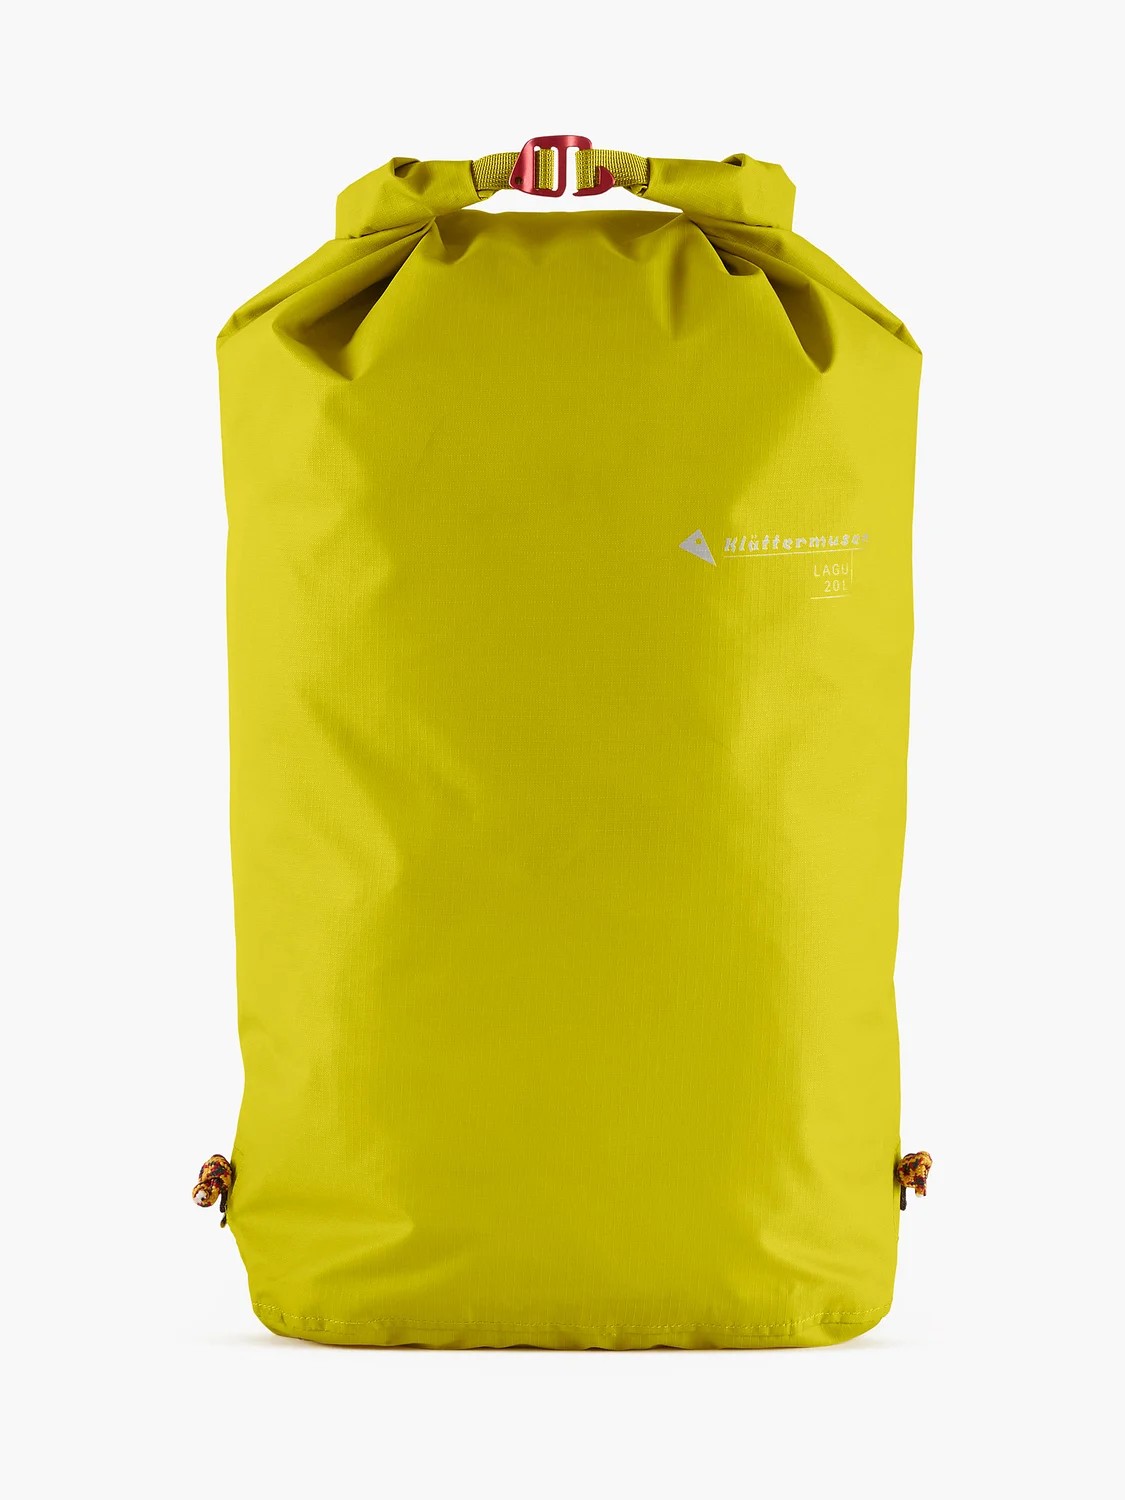 Lagu Waterproof Stuff Bag 20L